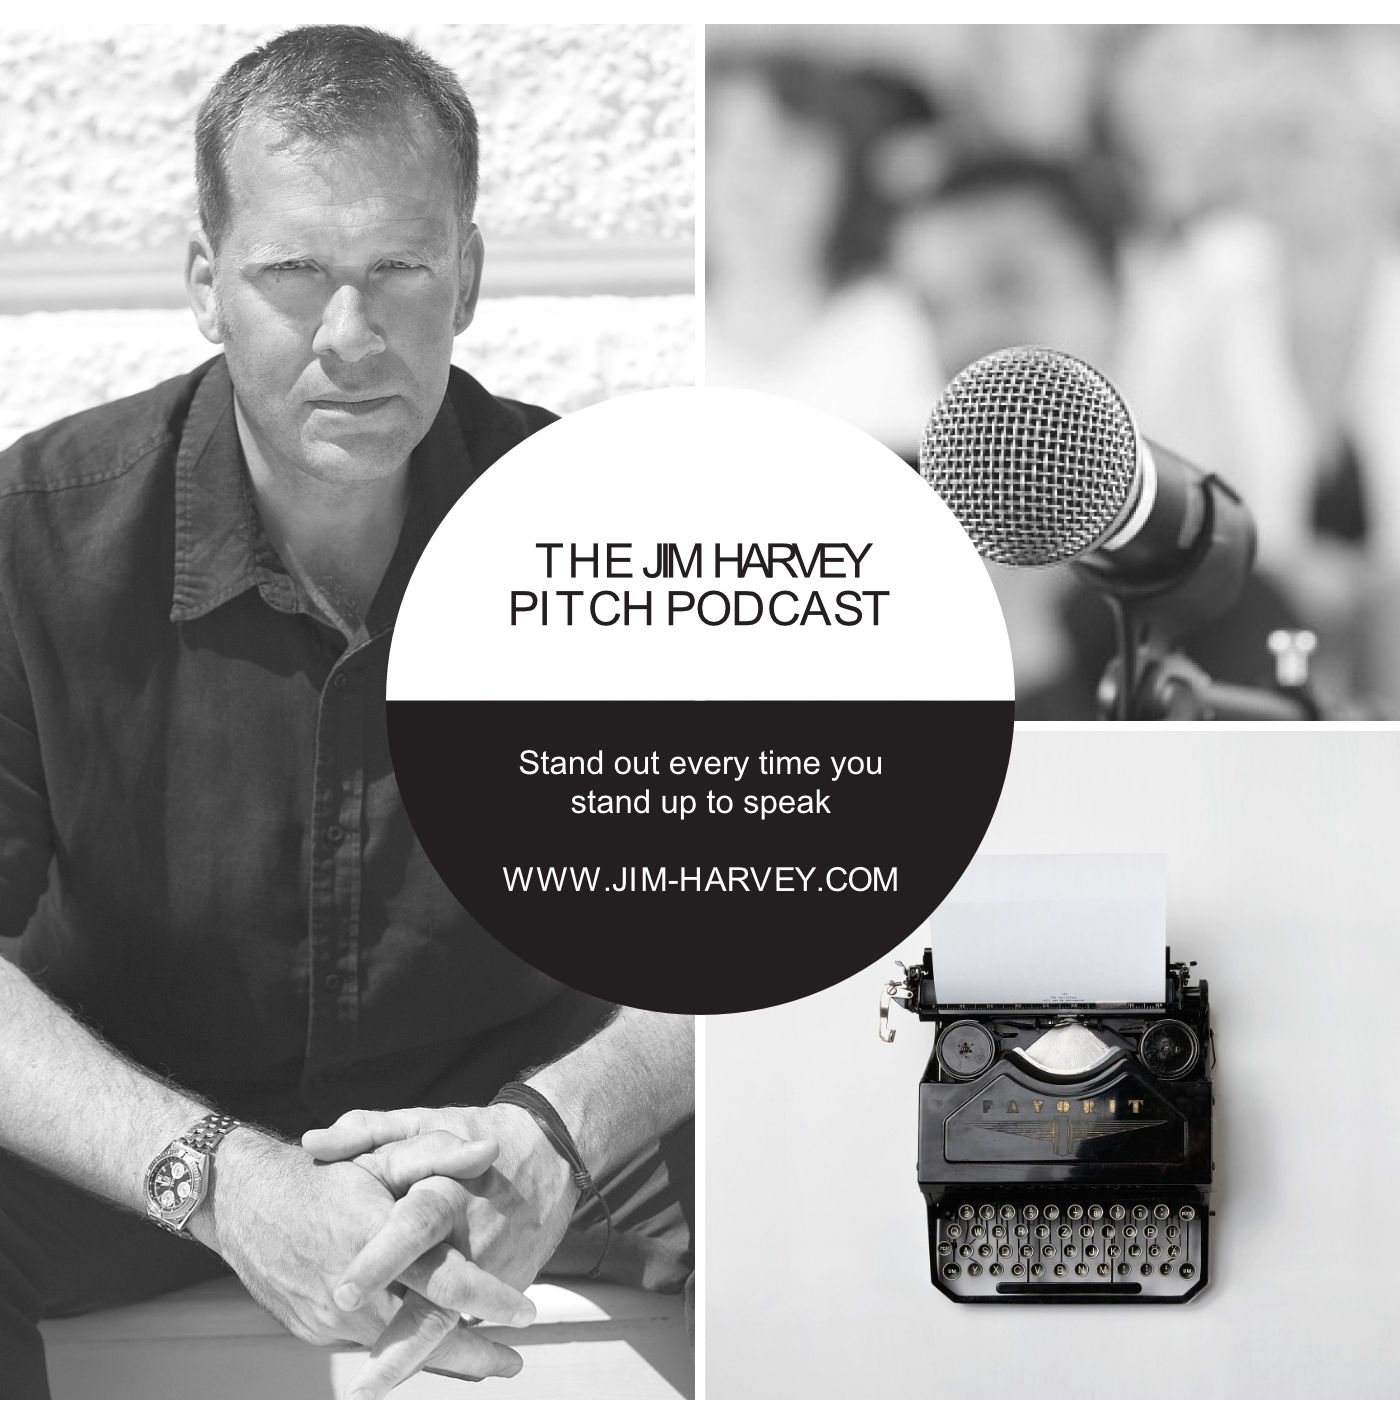 The Jim Harvey Pitch Podcast